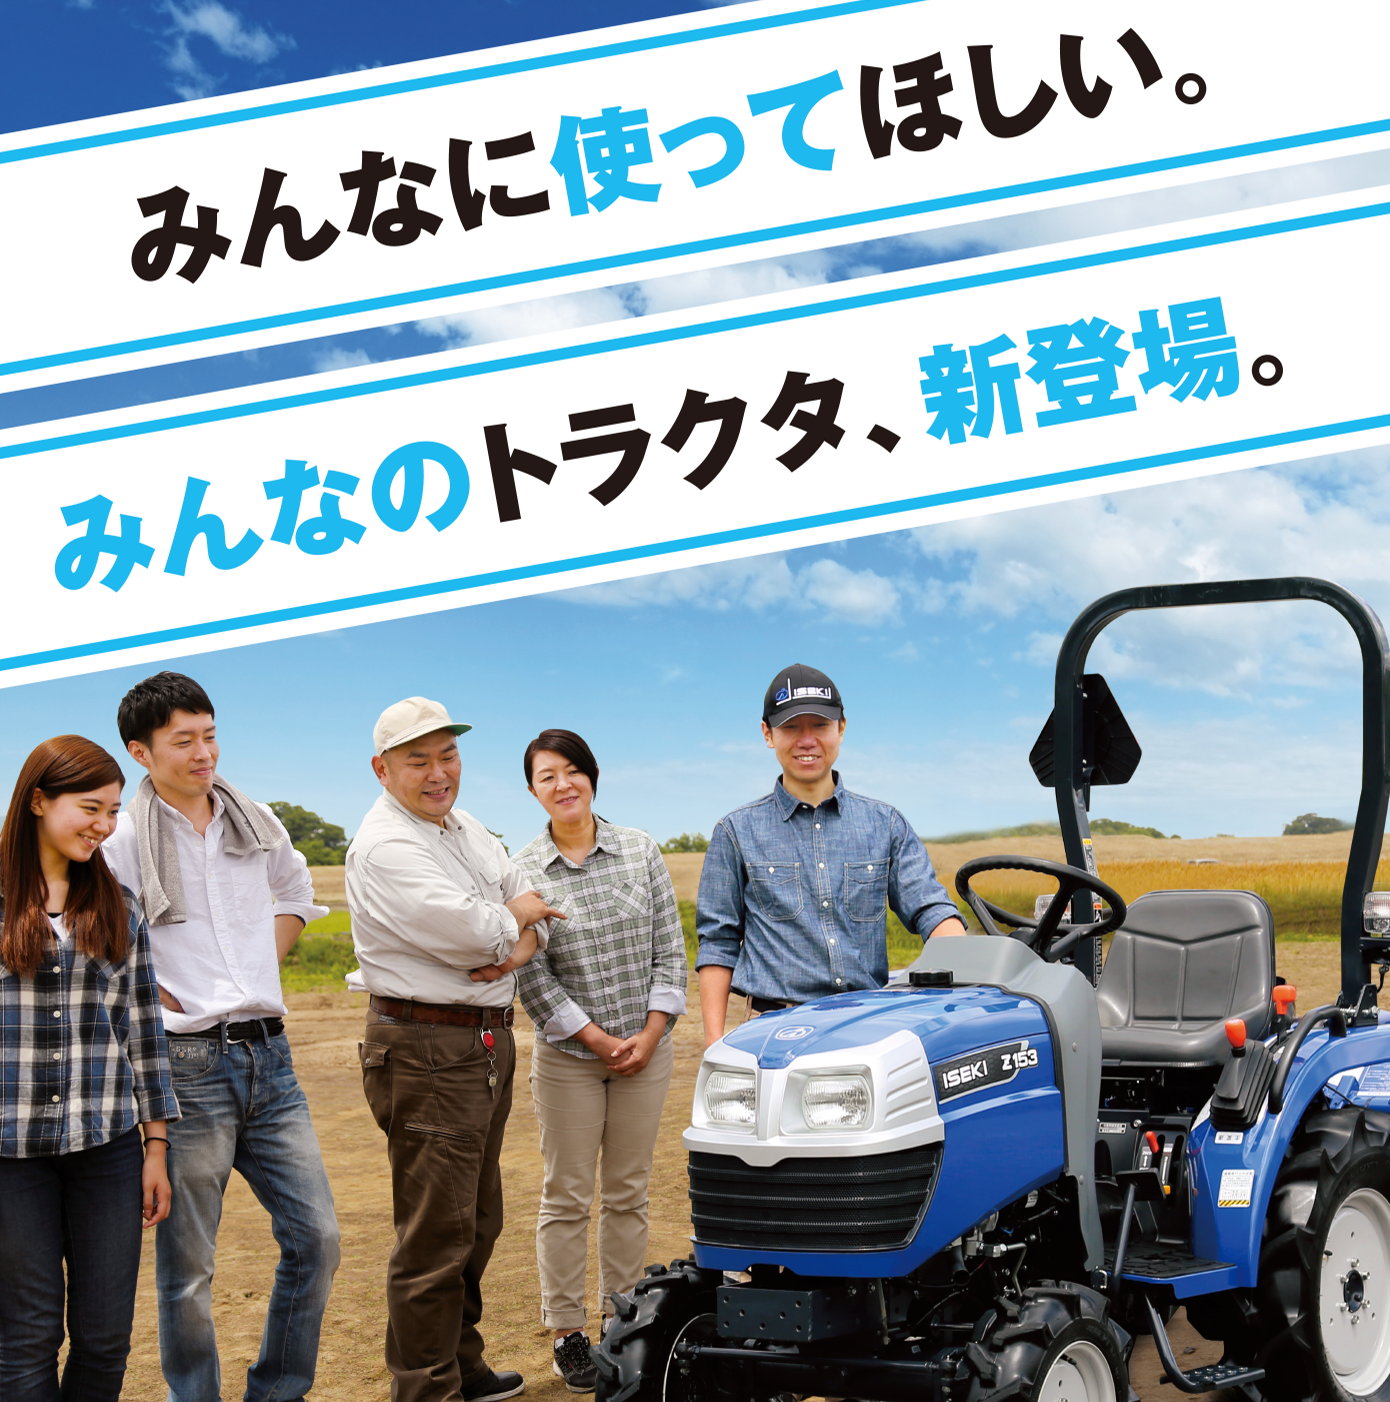 商品情報 トラクタ Z153 15 6ps 井関農機株式会社